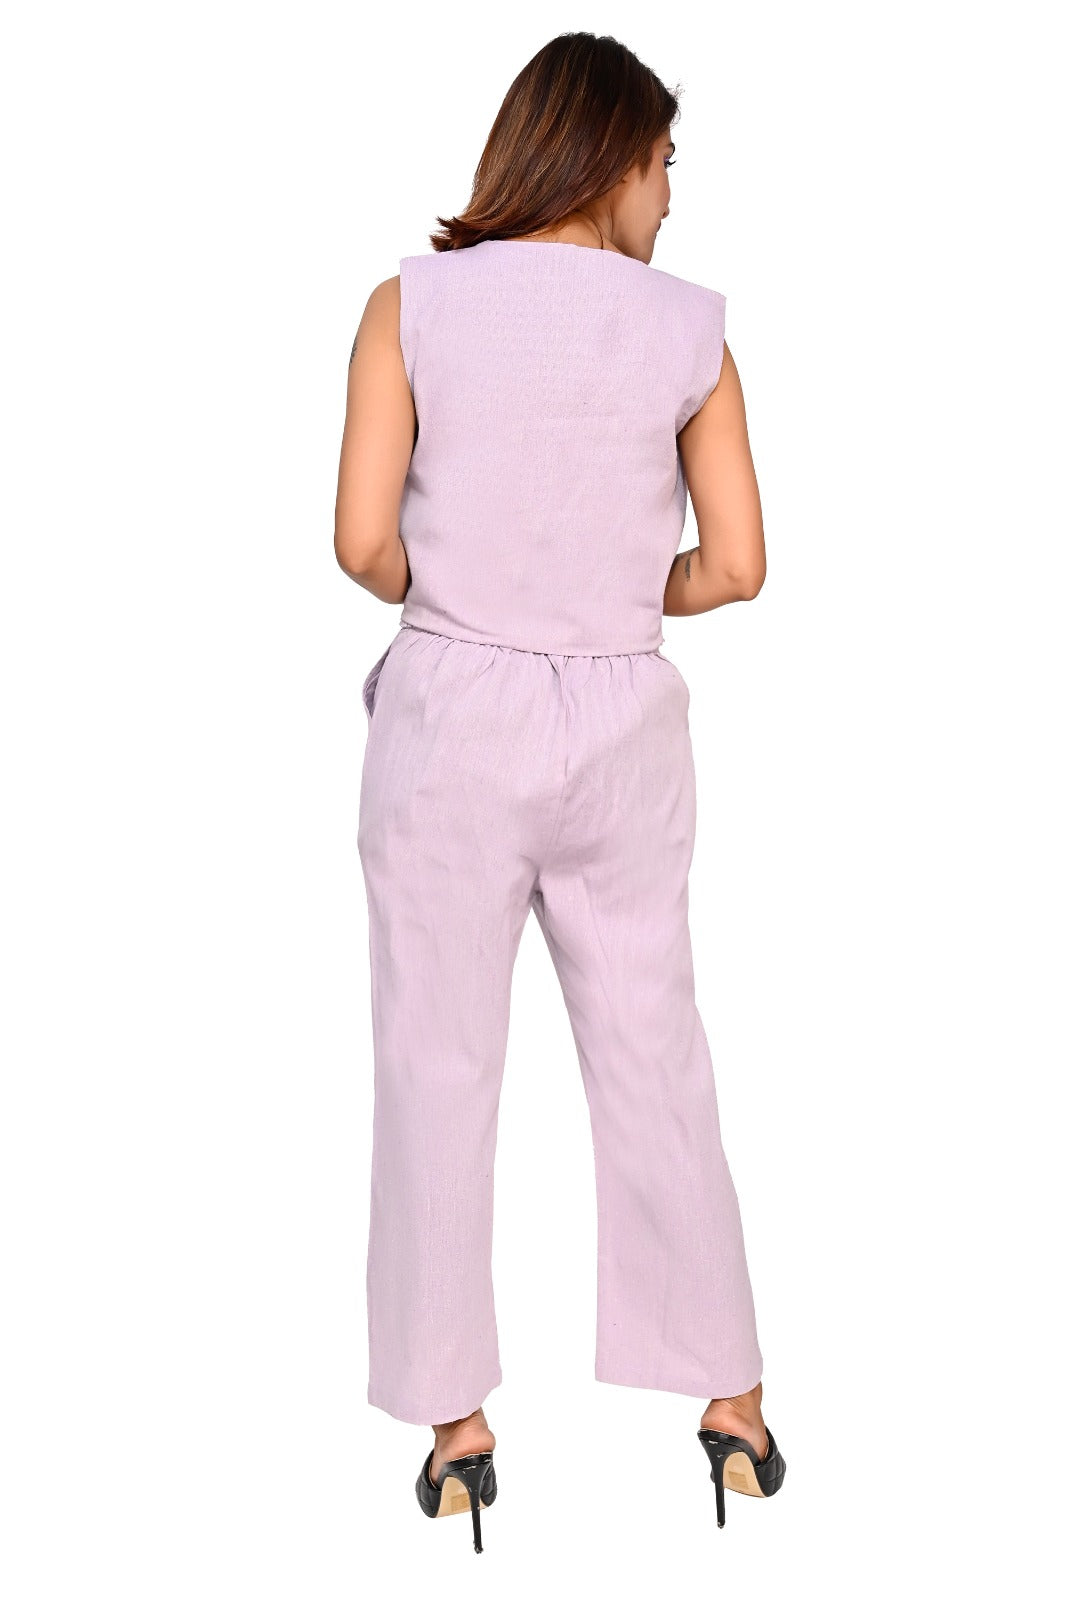 Nirmal online Premium Cotton co-ord set for Women in Purple Colour